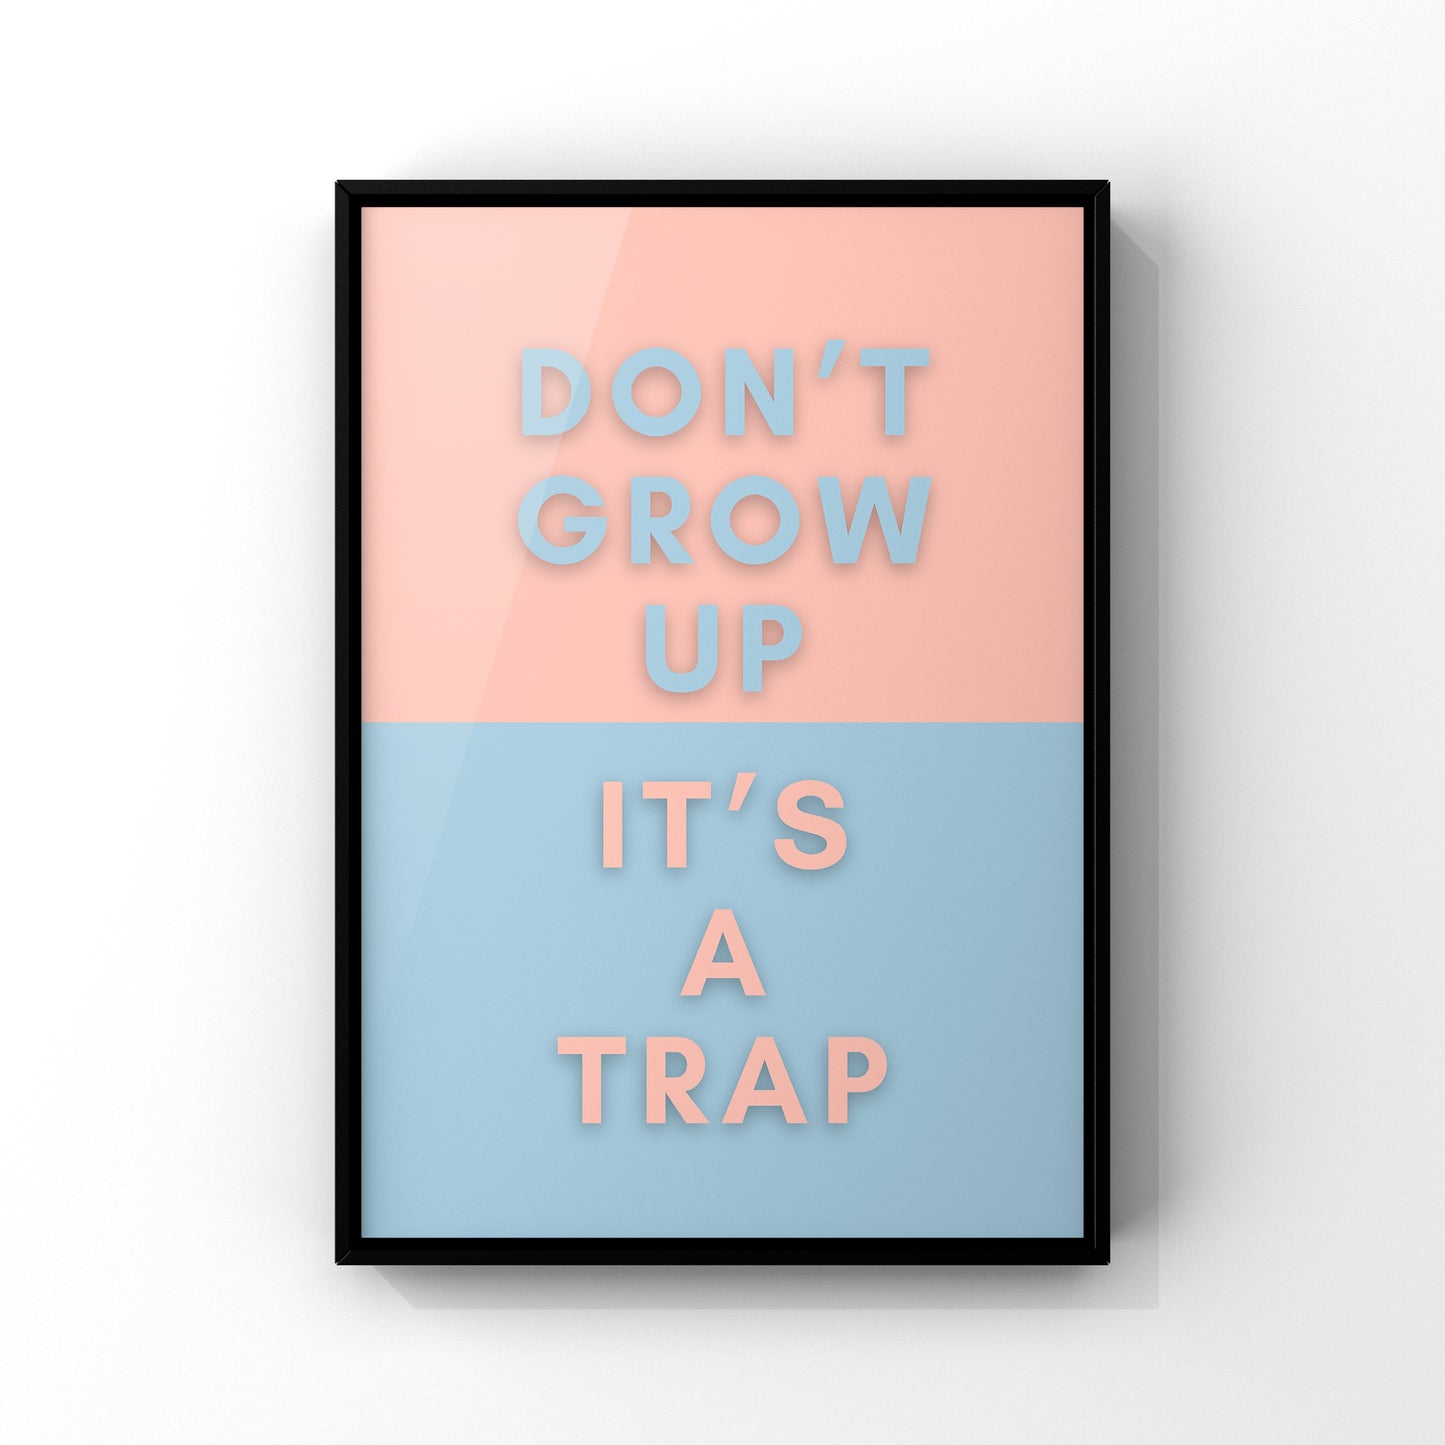 Don’t grow up